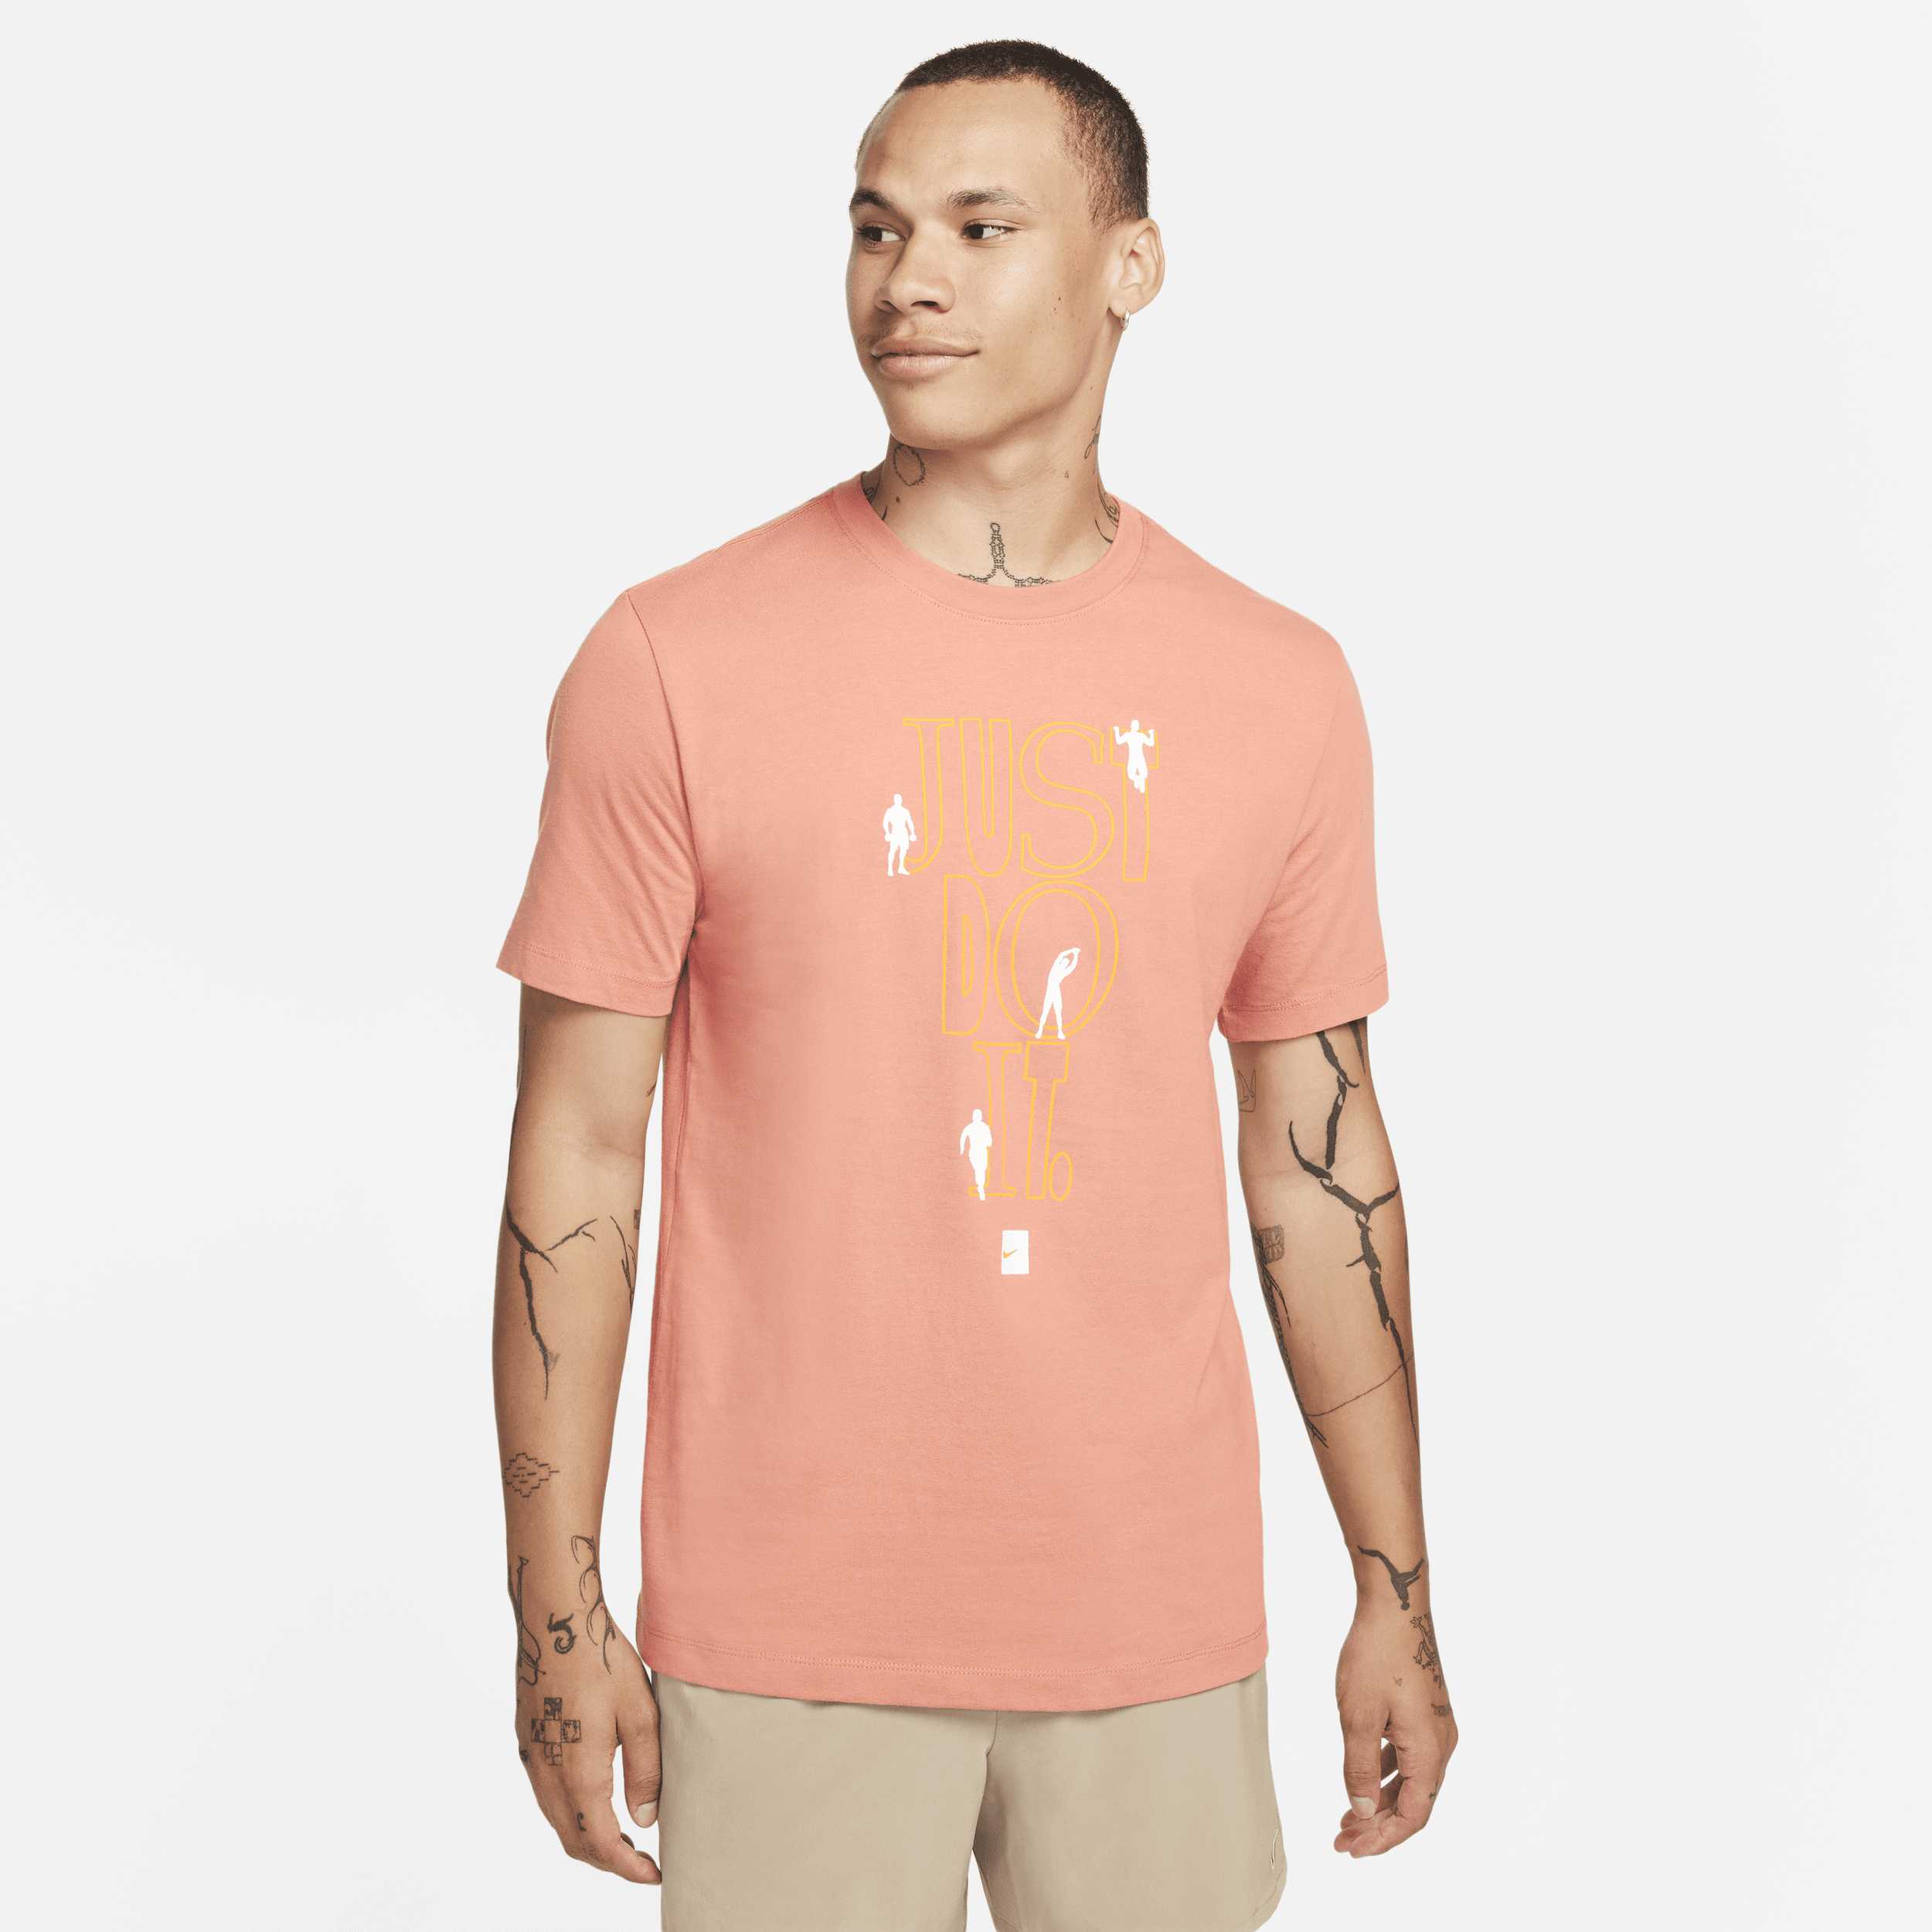 Nike Fitness T-shirt met graphic voor heren - Bruin